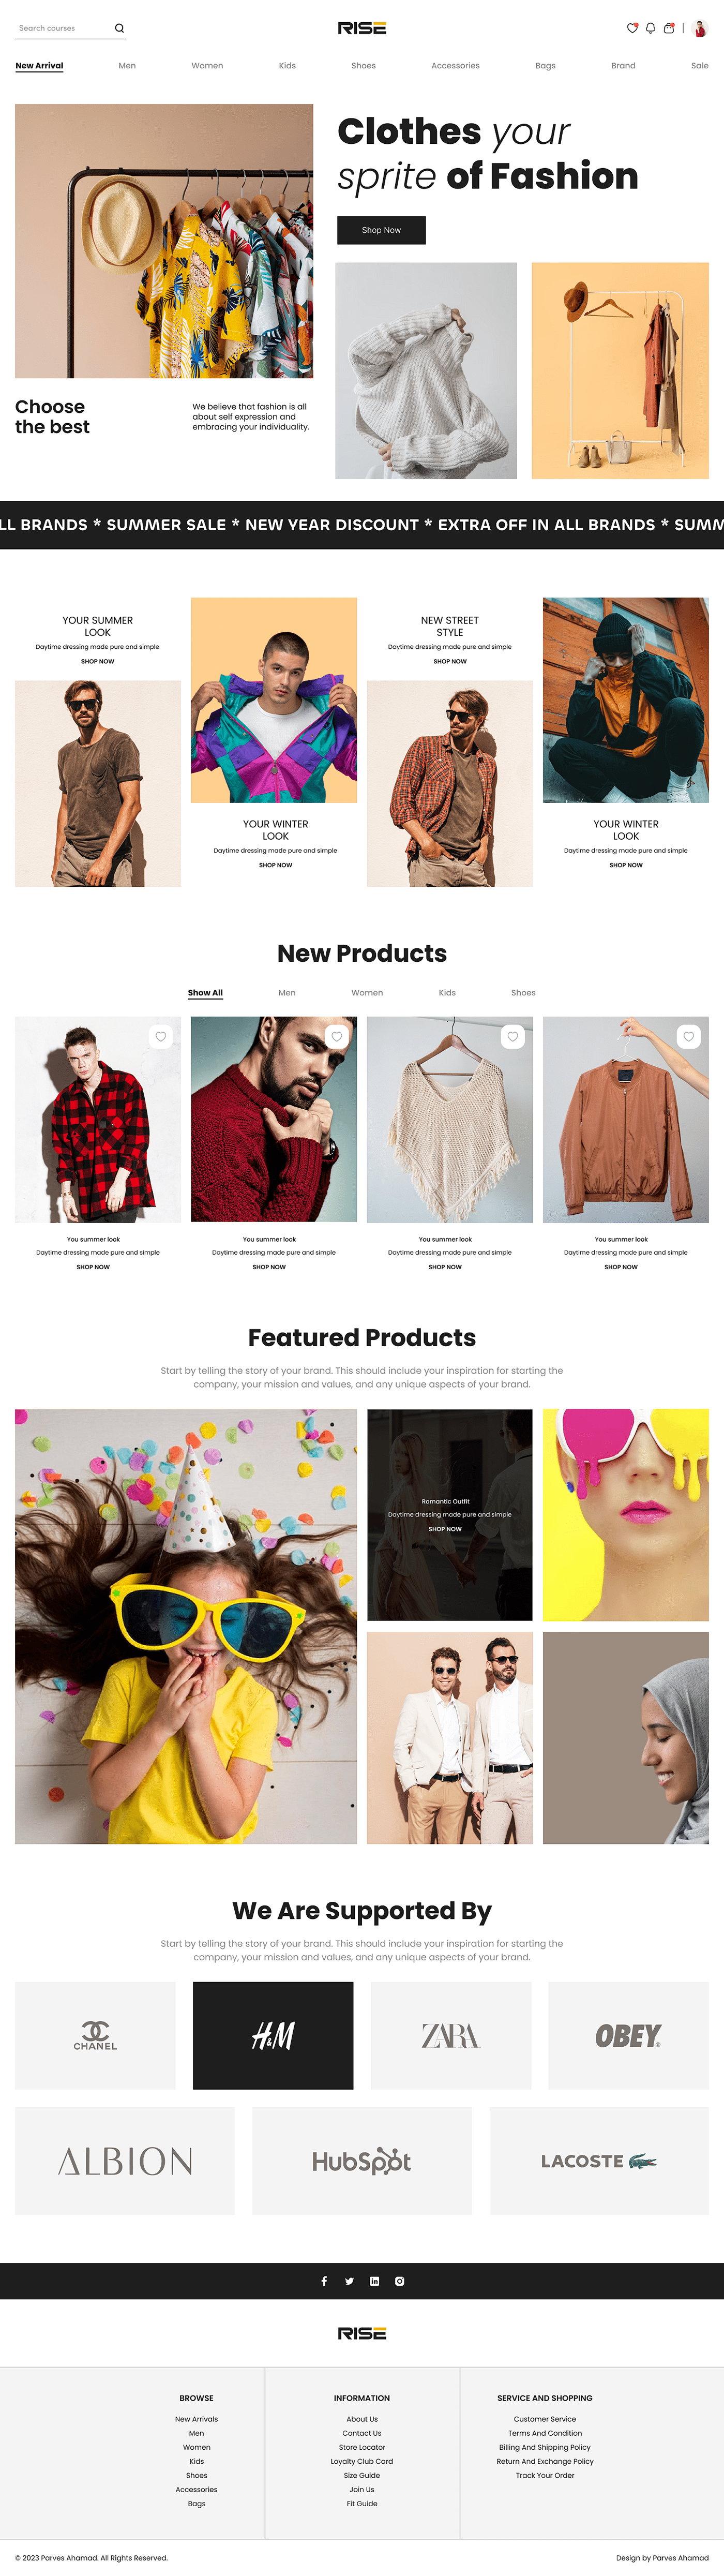 Website Web Design  UI Online shop landing page fashion website clothes woman model beauty